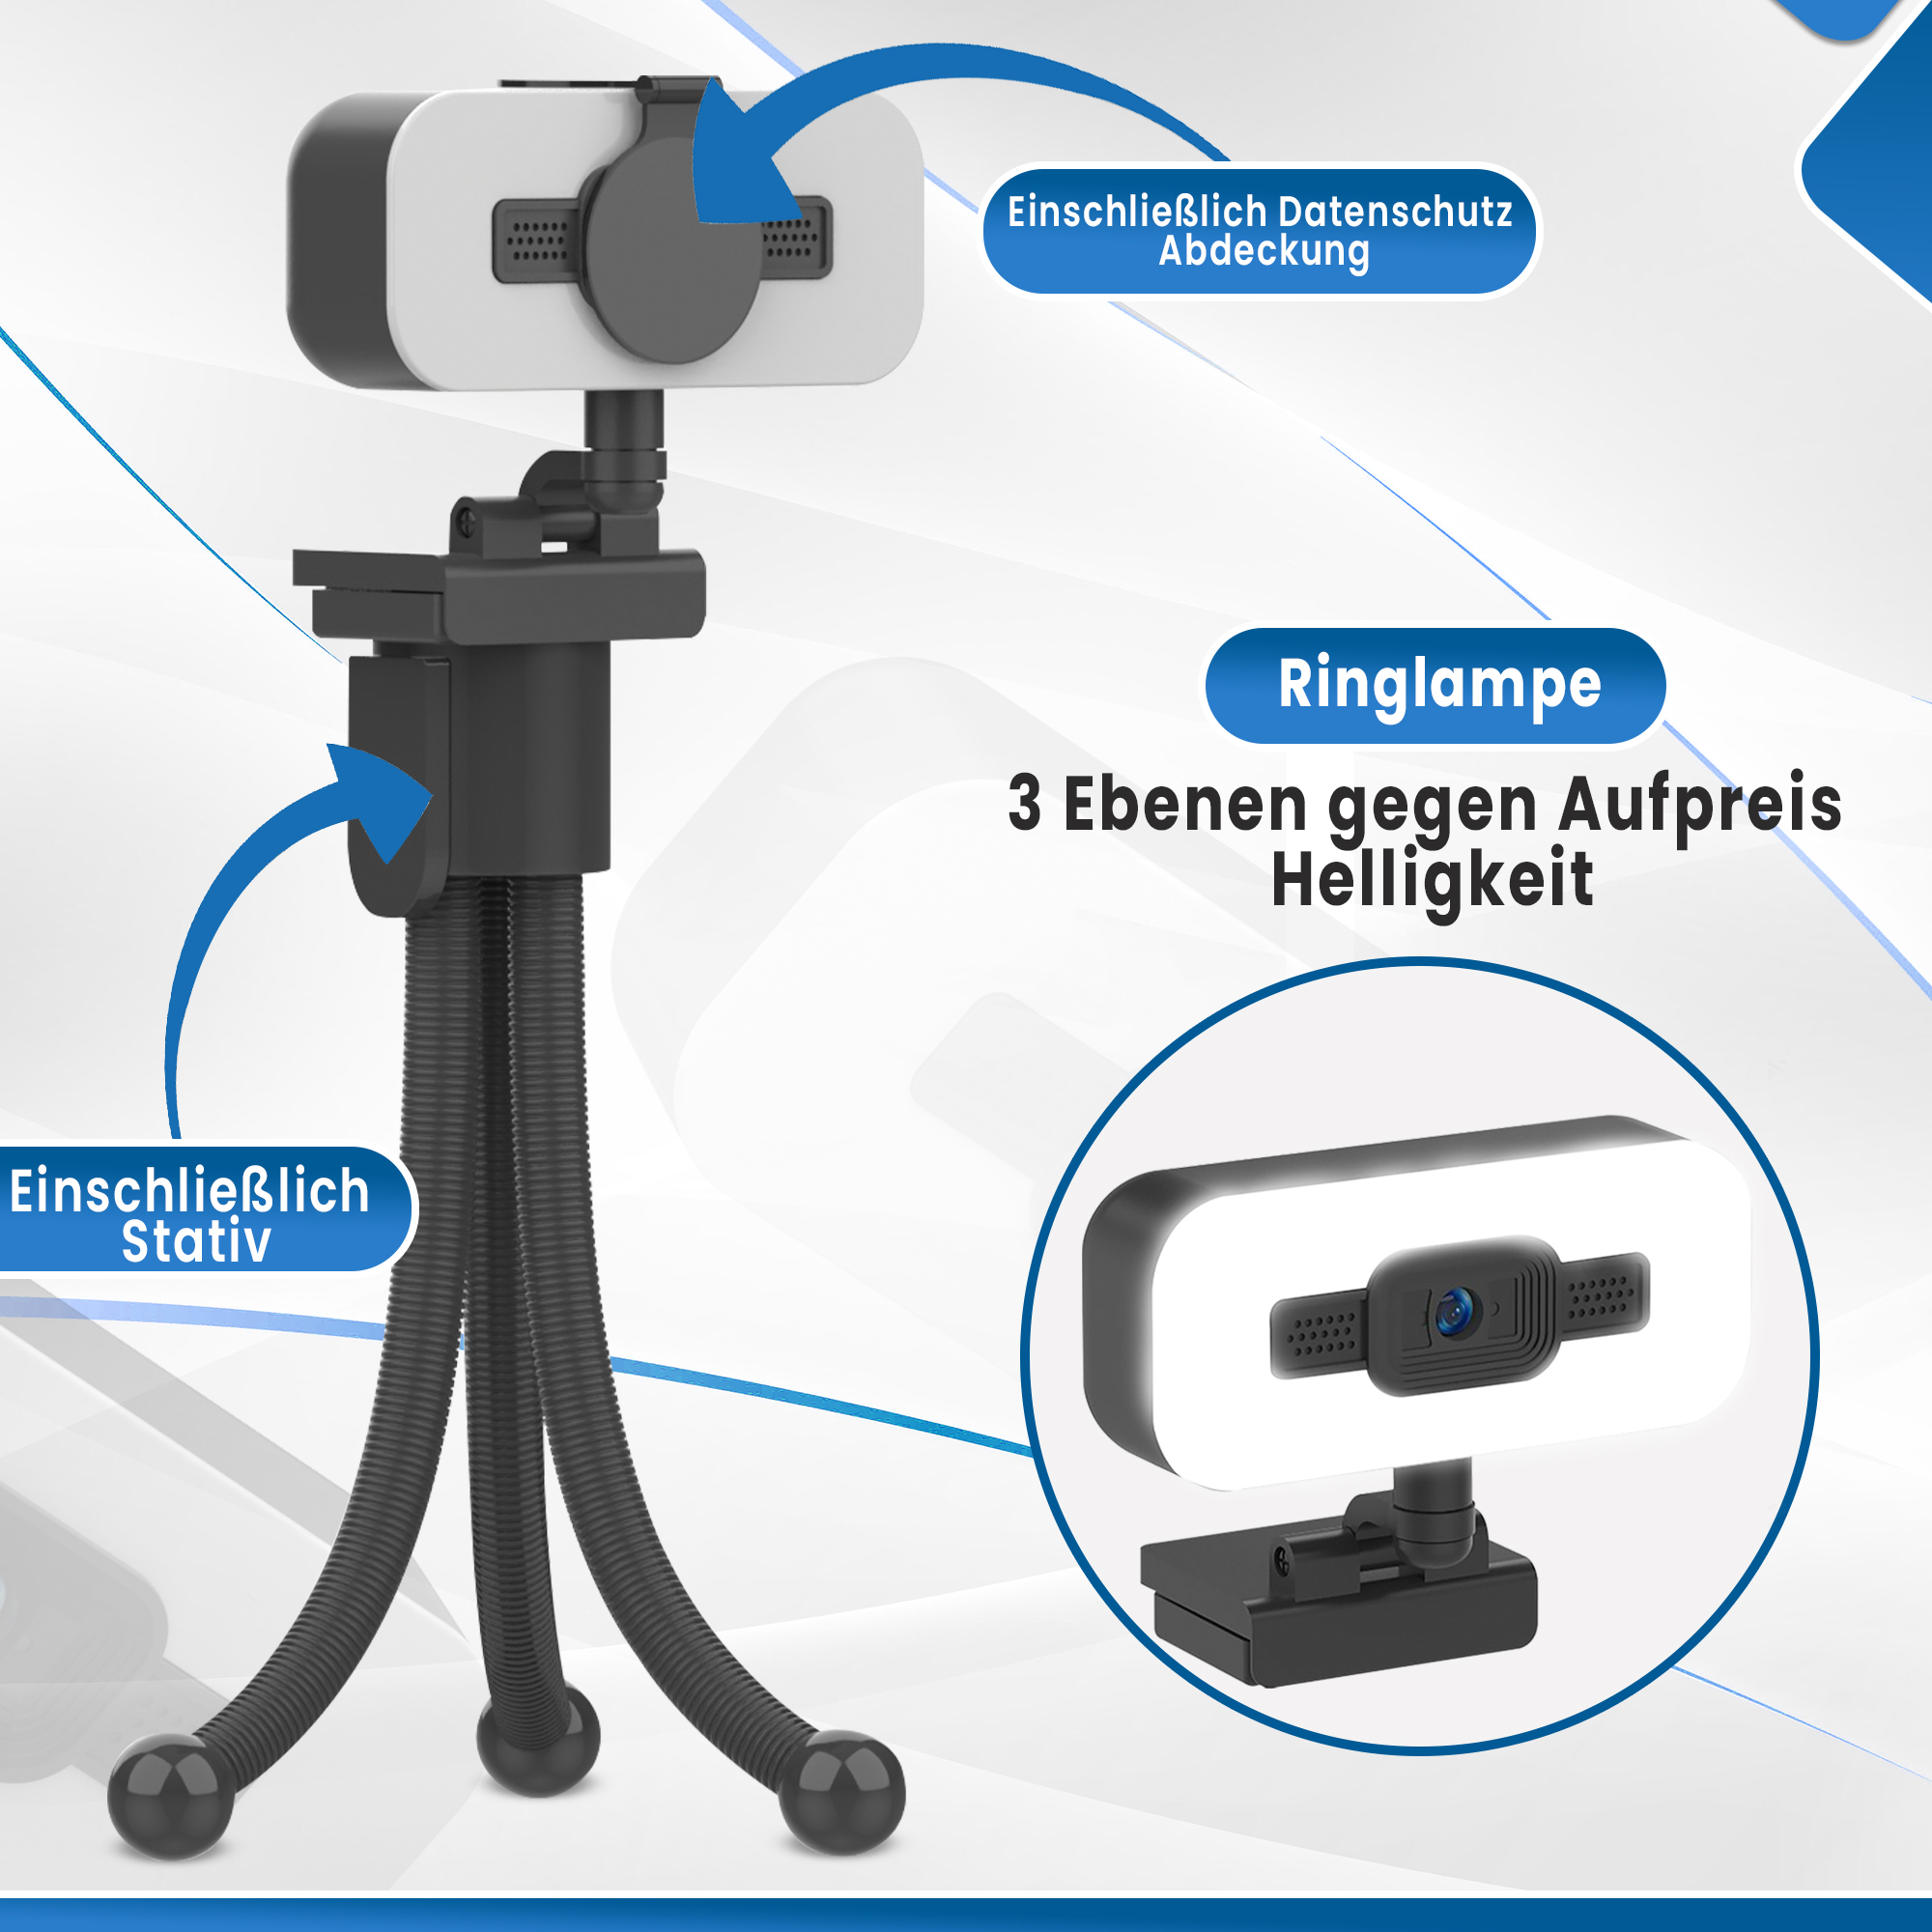 Megapixel 8 Webcam 4K ROLIO